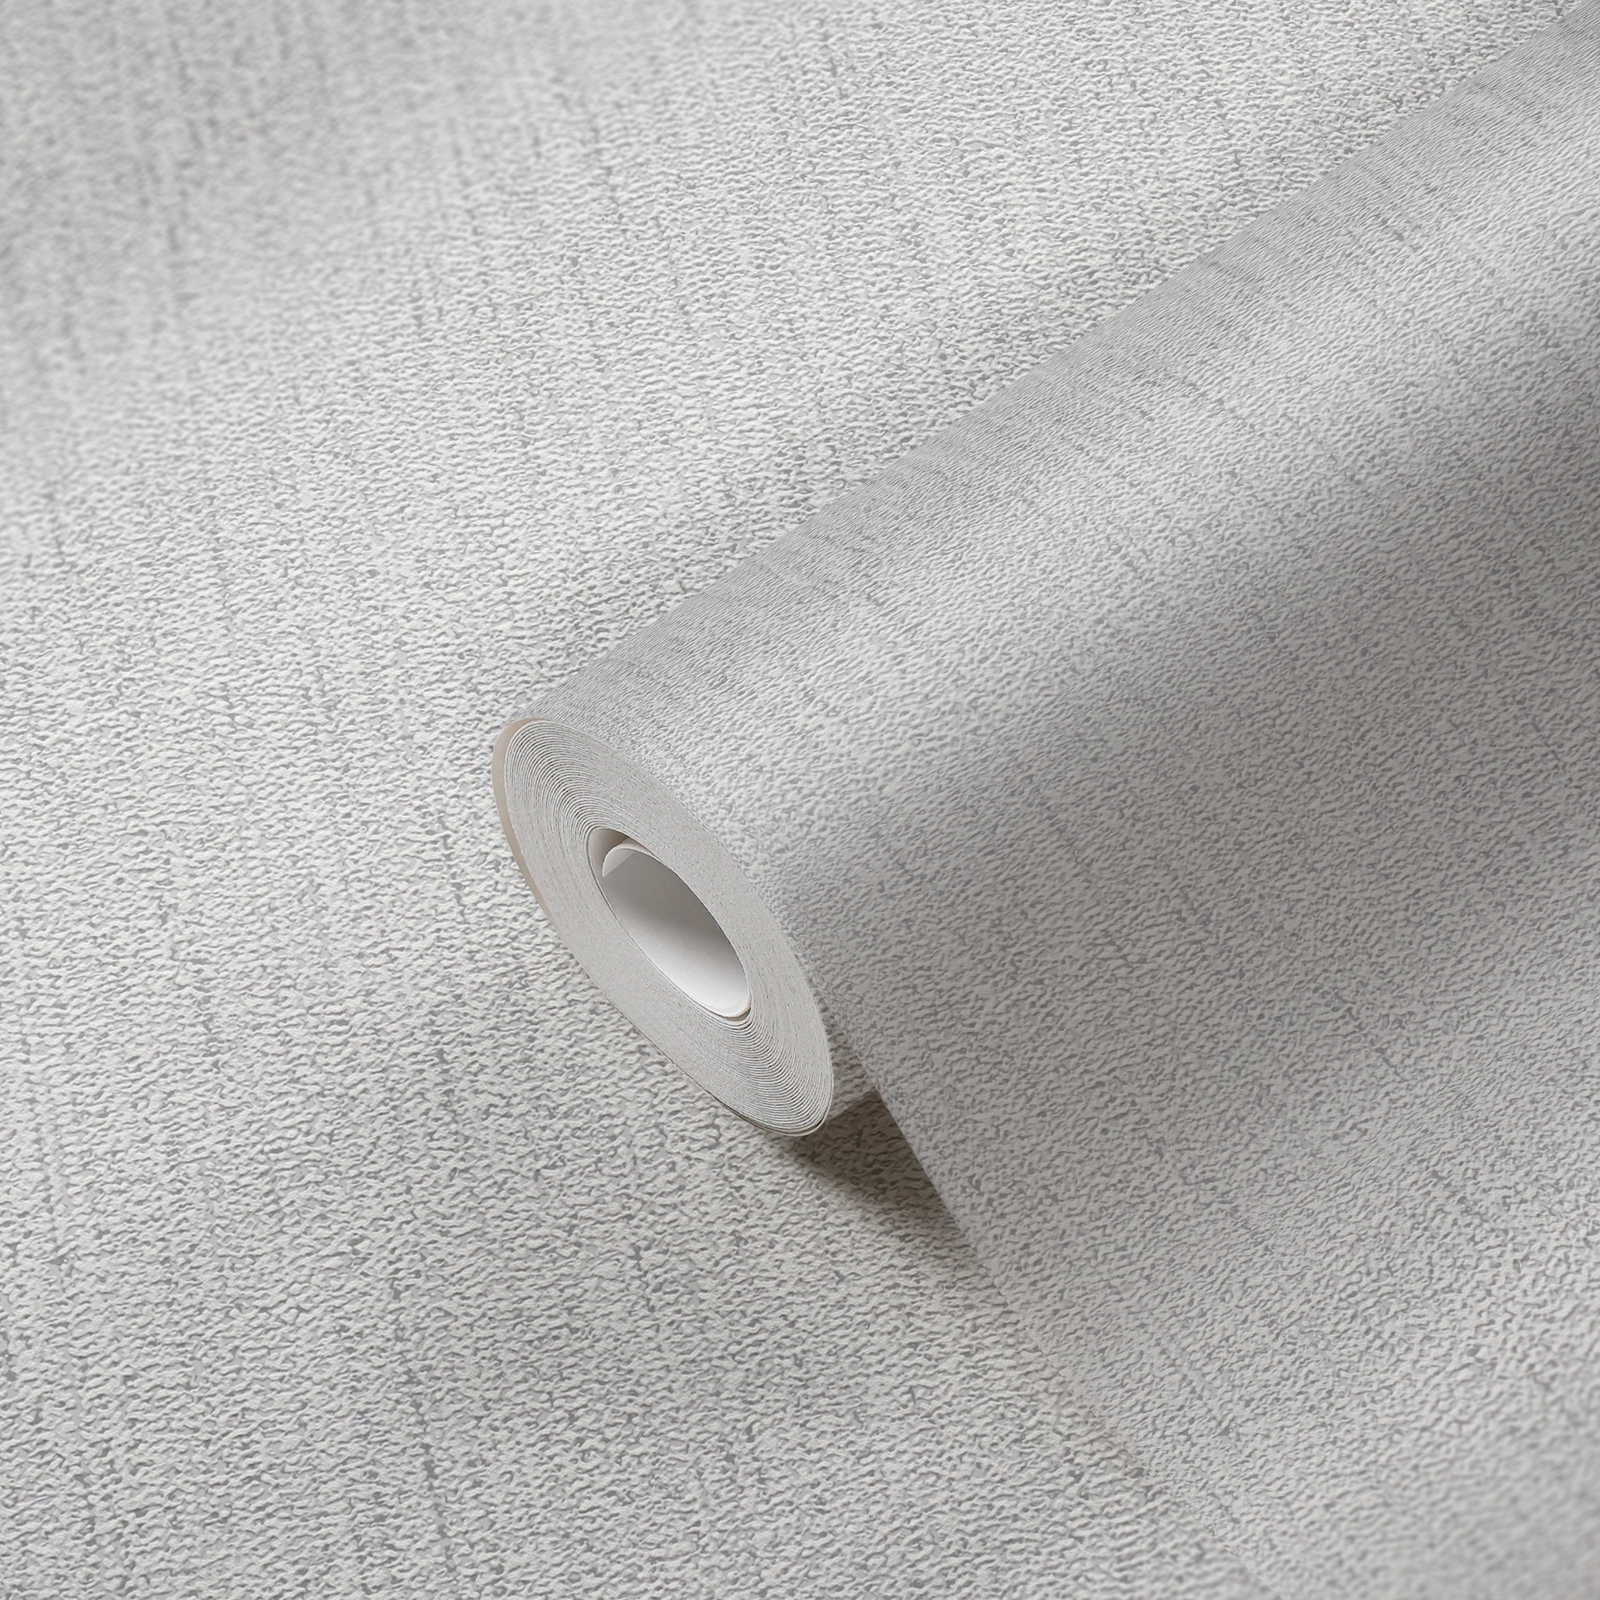             Papier peint structuré avec motif tissé - gris clair, argenté
        